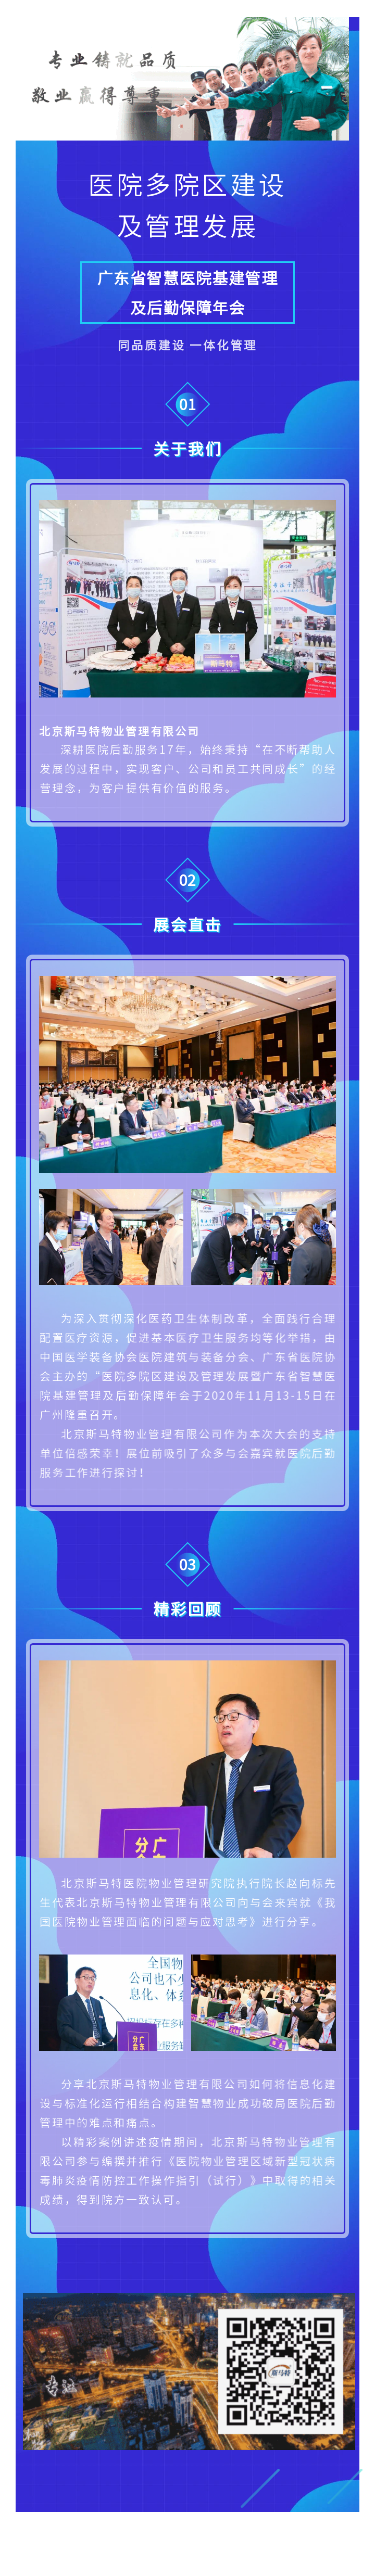 医院多院区建设及管理发展暨广东省智慧医院基建管理及后勤保障年会于2020年11月13-15日在广州隆重召开